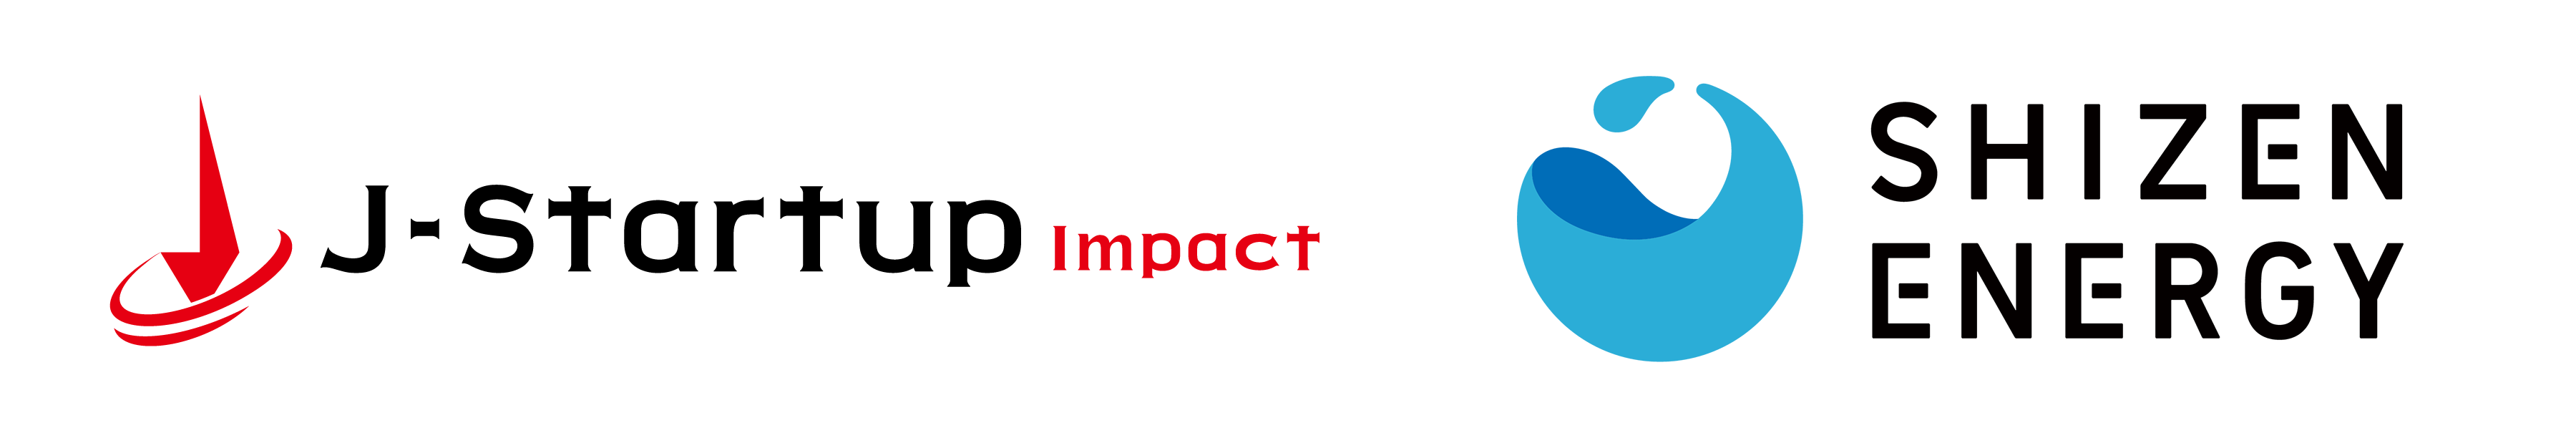 インパクトスタートアップ支援プログラム「J-Startup Impact」に選定されました